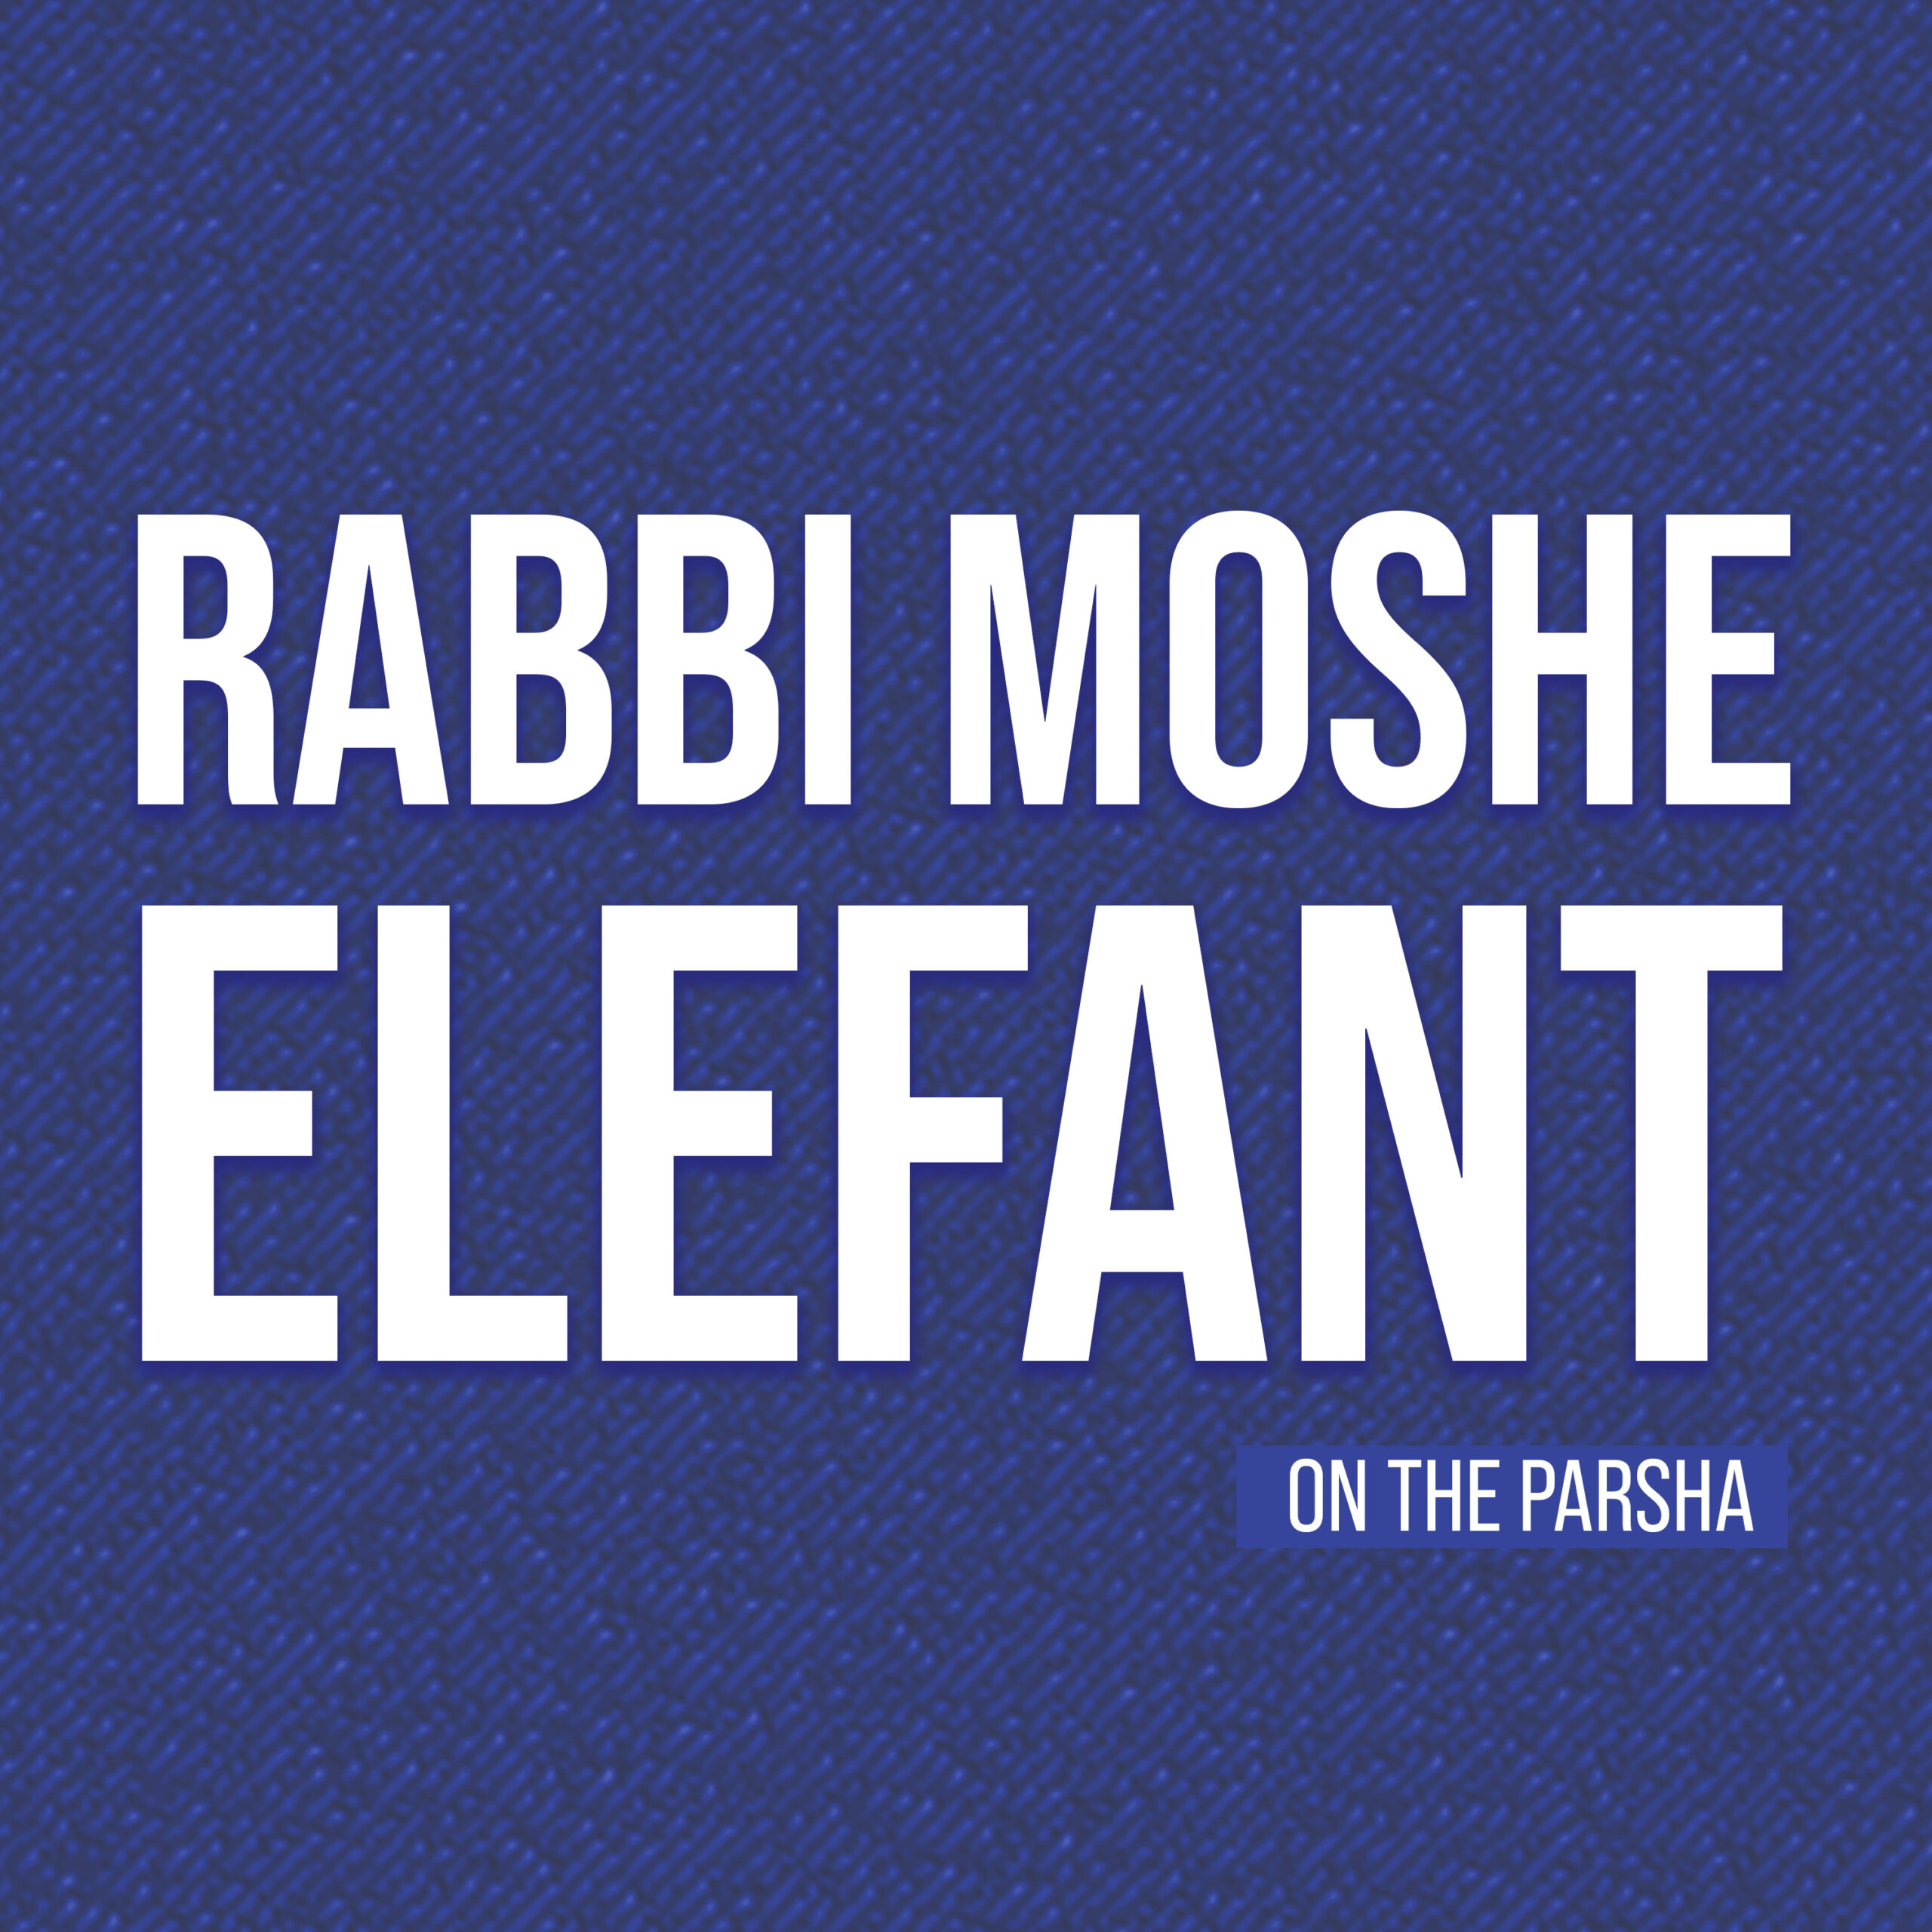 Rabbi Elephant